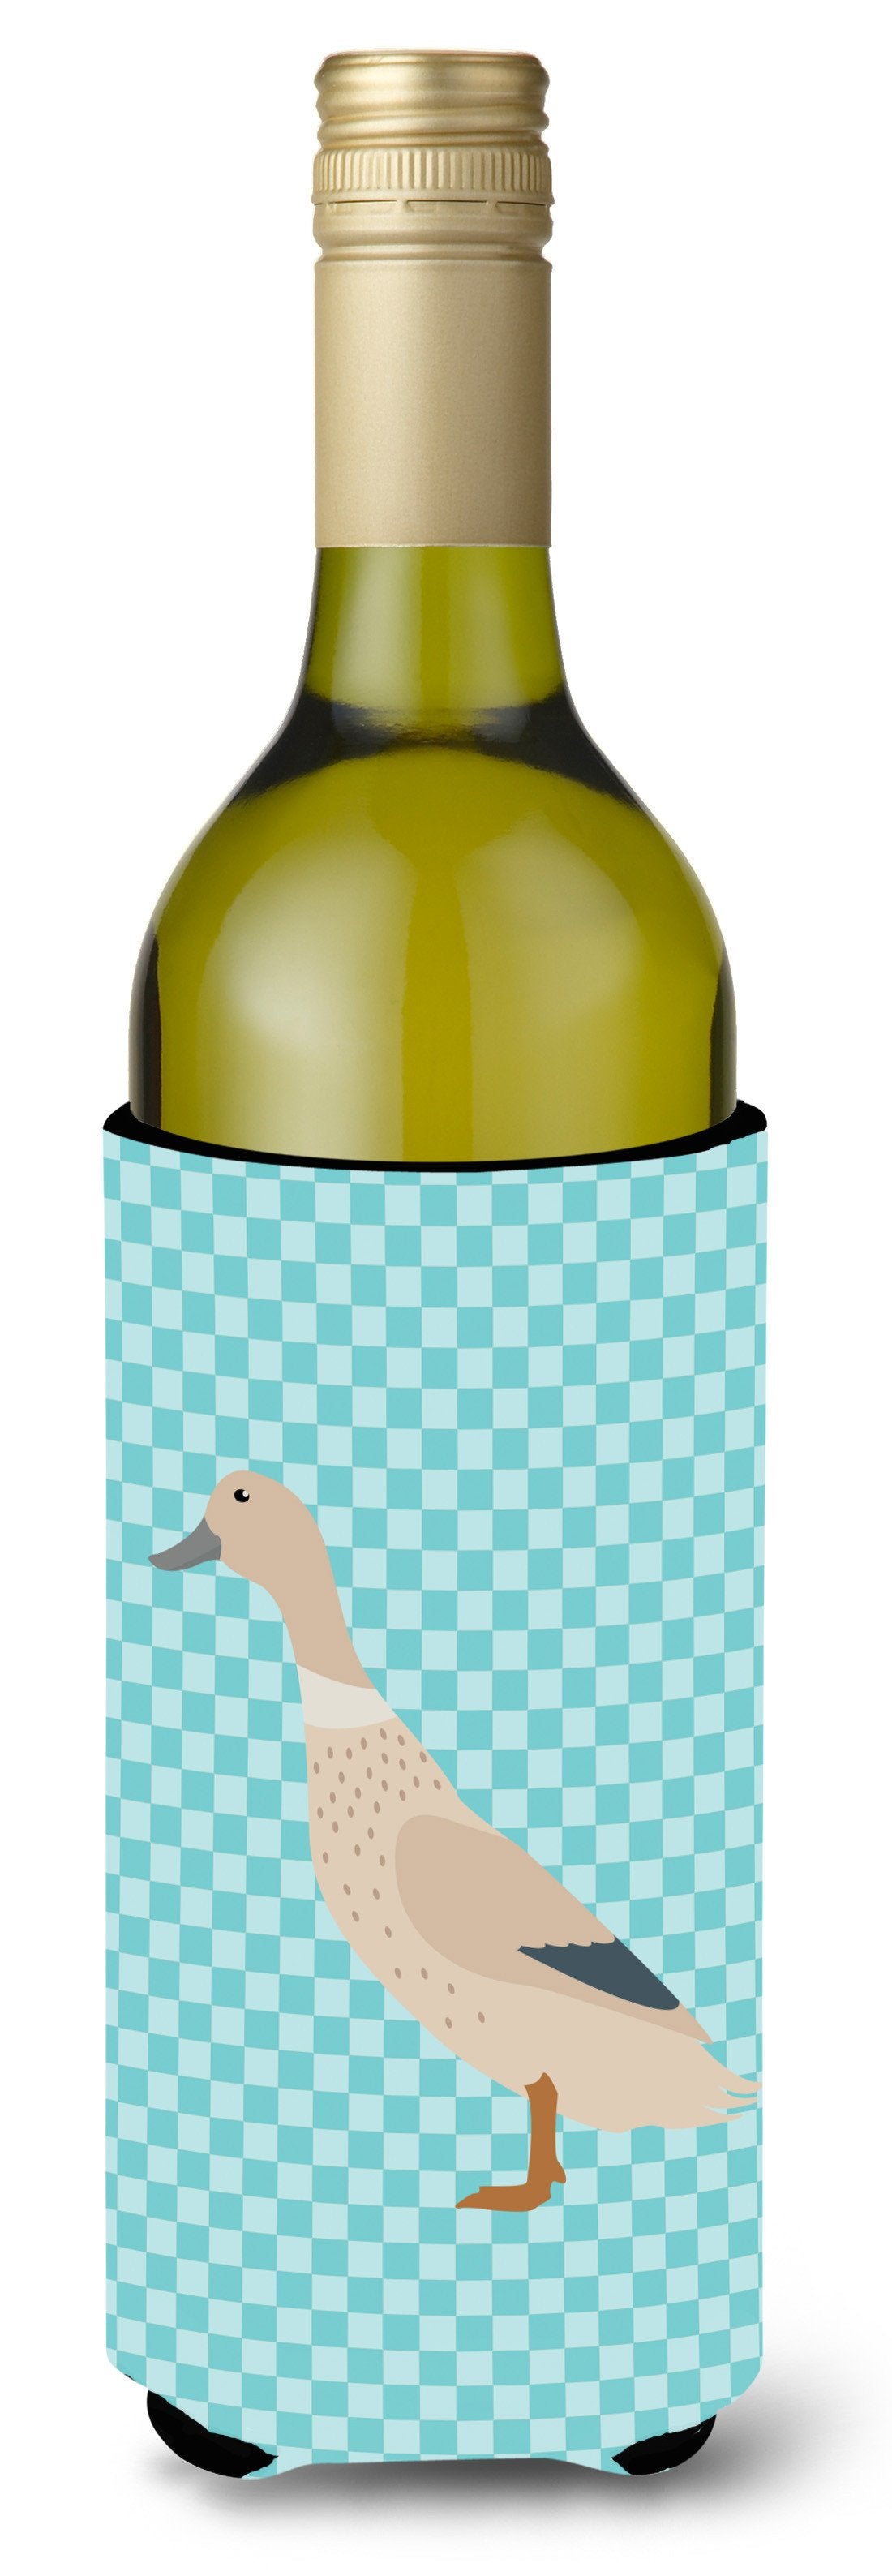 West Harlequin Duck Blue Check Wine Bottle Beverge Insulator Hugger BB8032LITERK by Caroline's Treasures